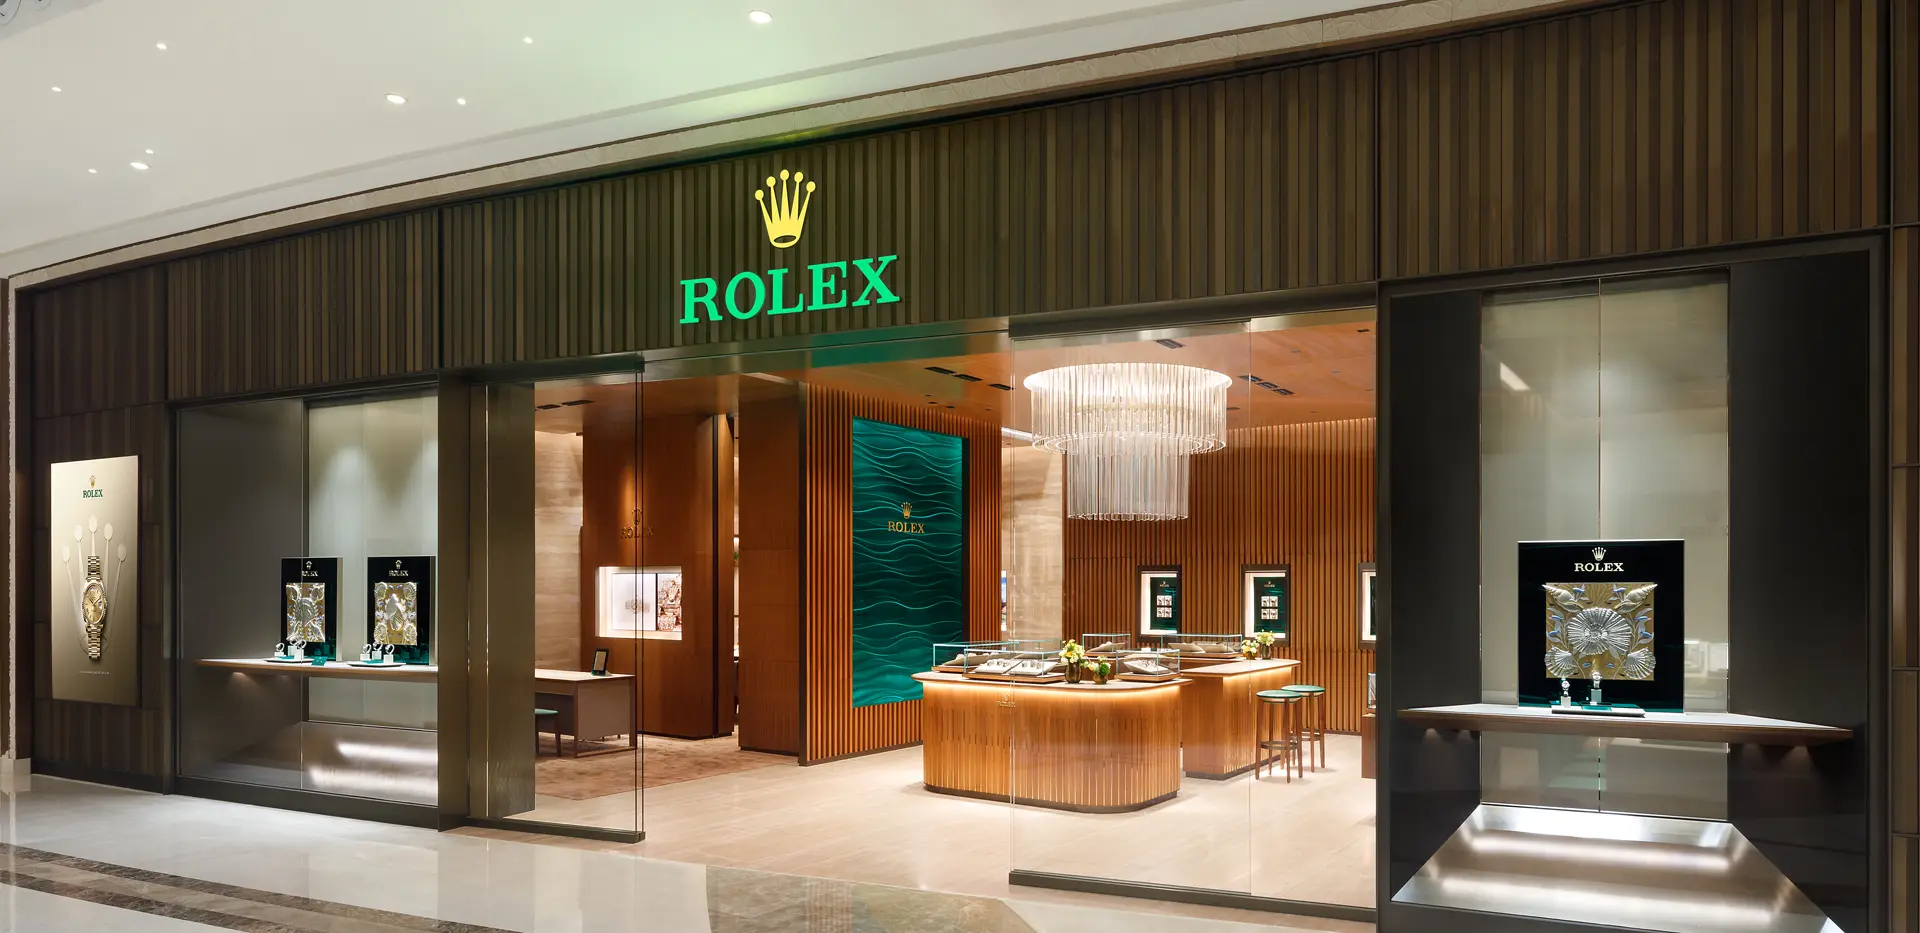 Rolex Shop at Galaxy Macau